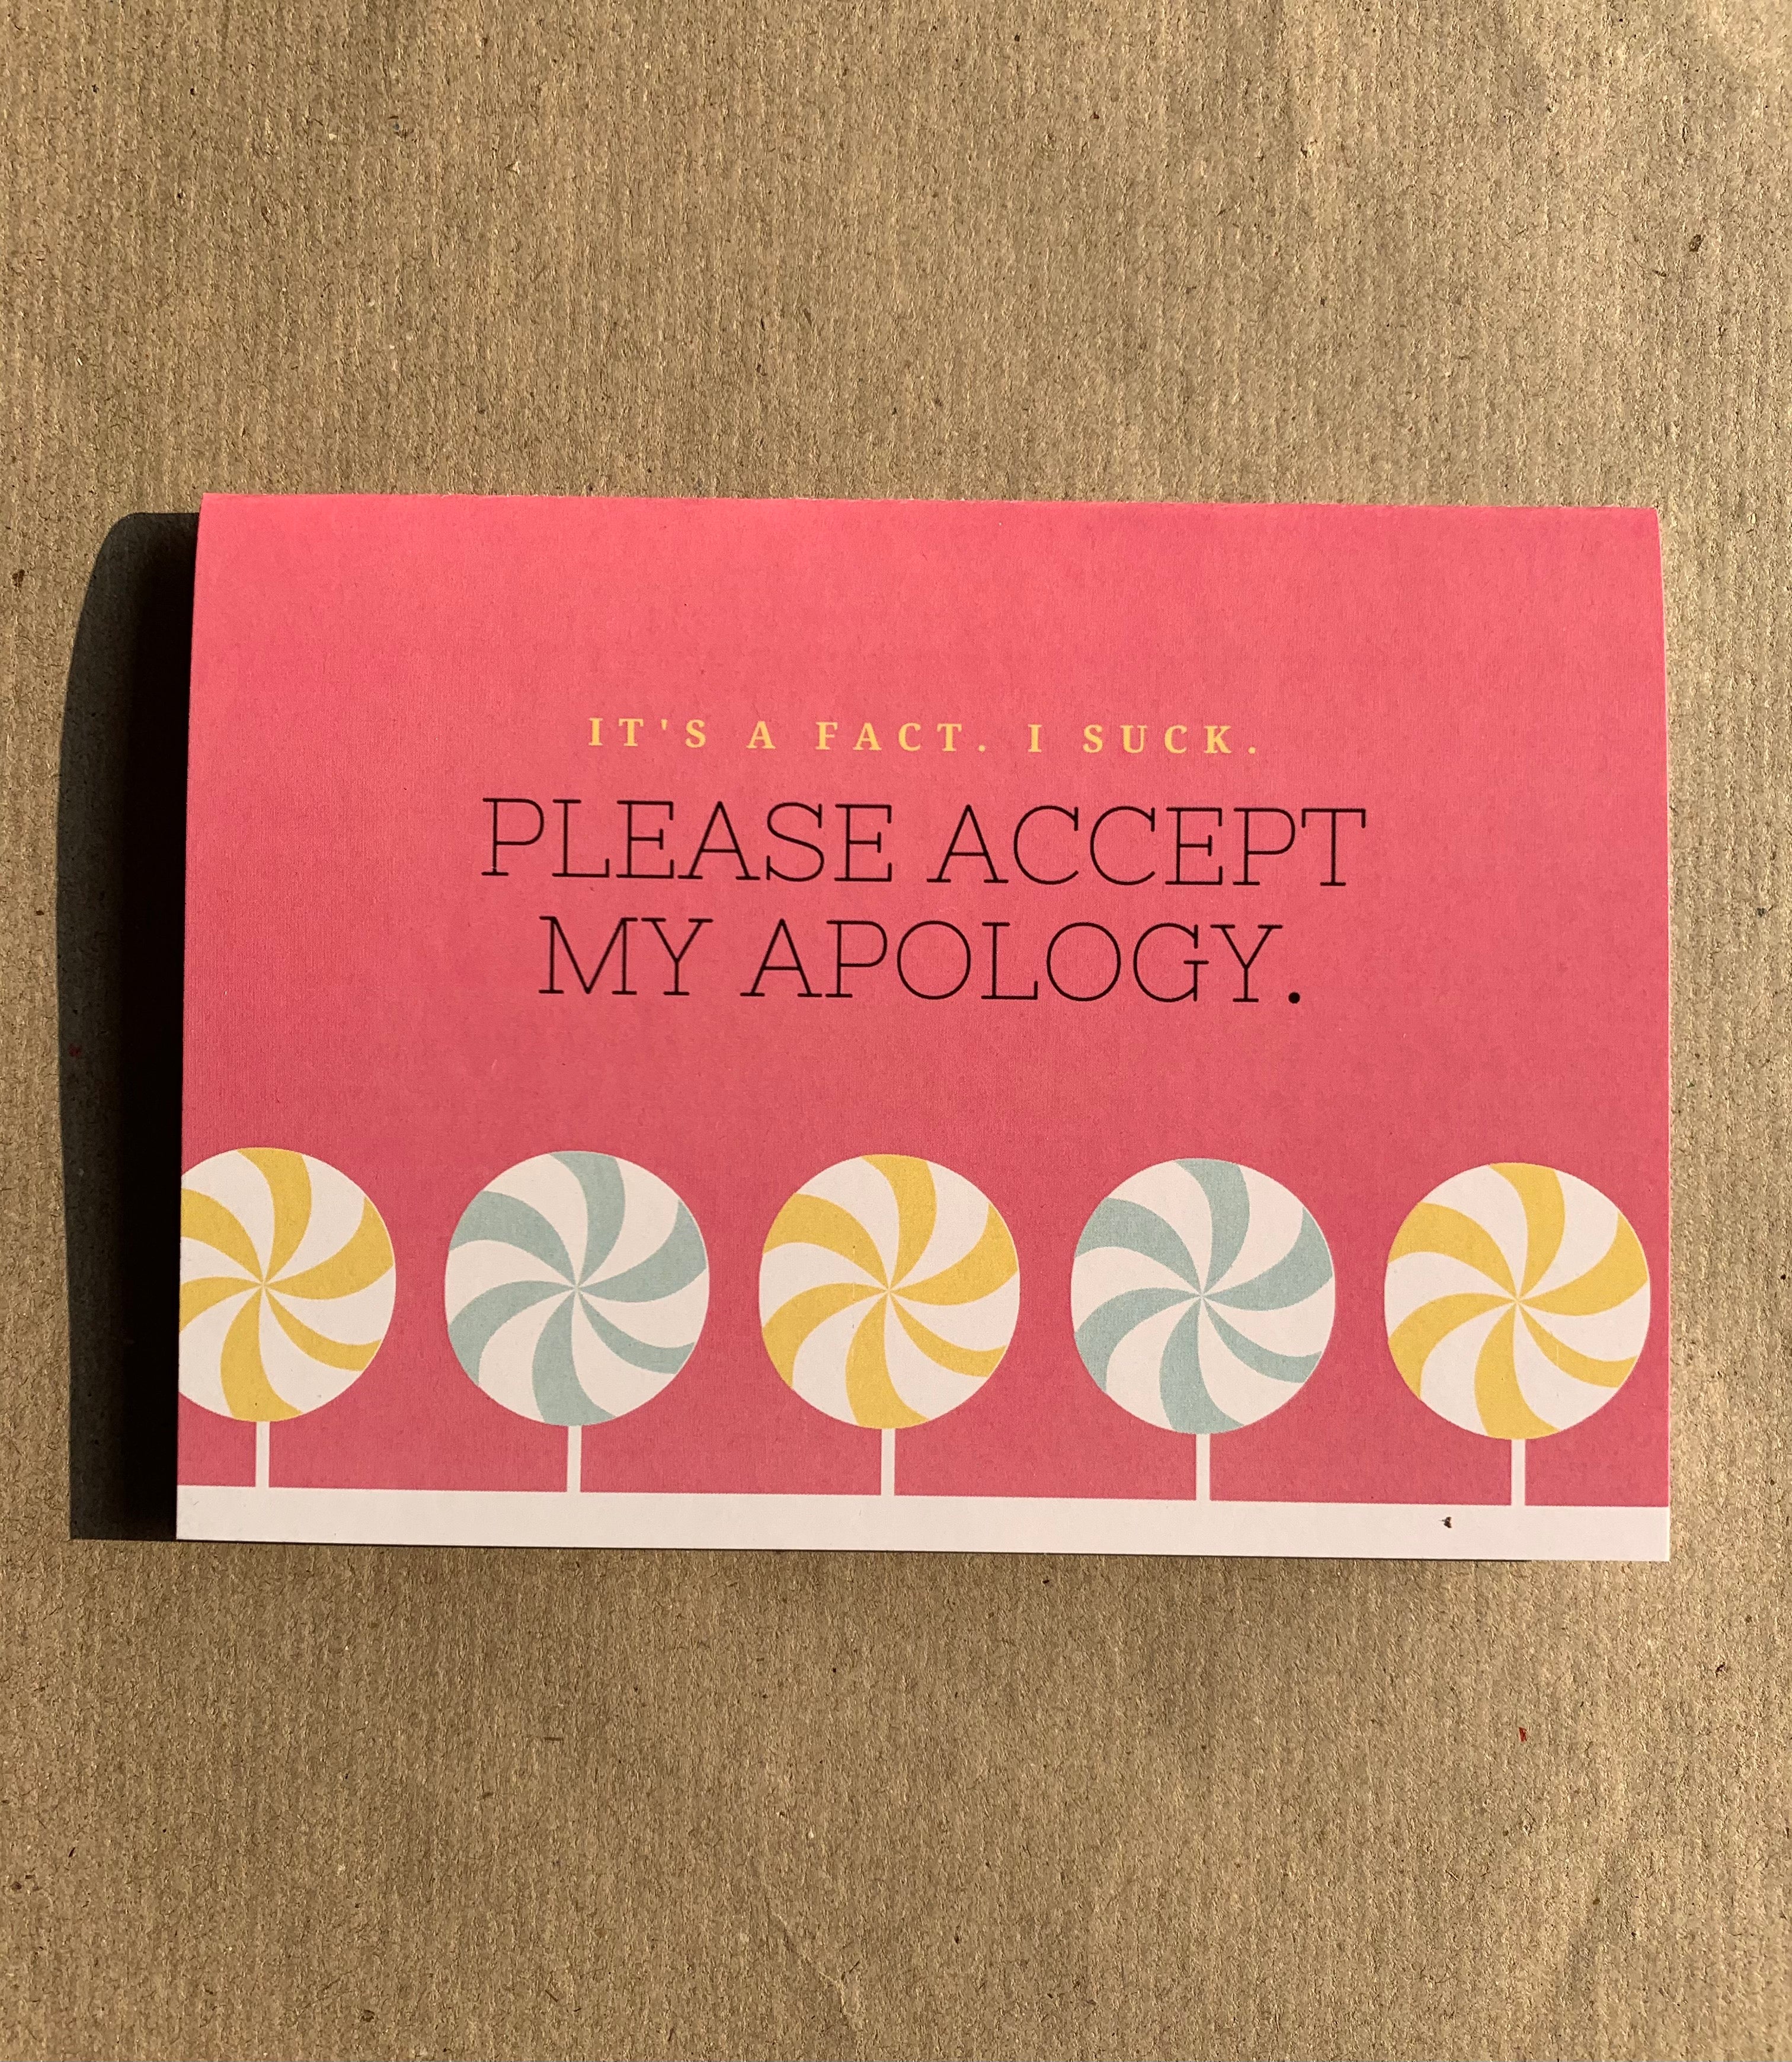 Please accept my apology card